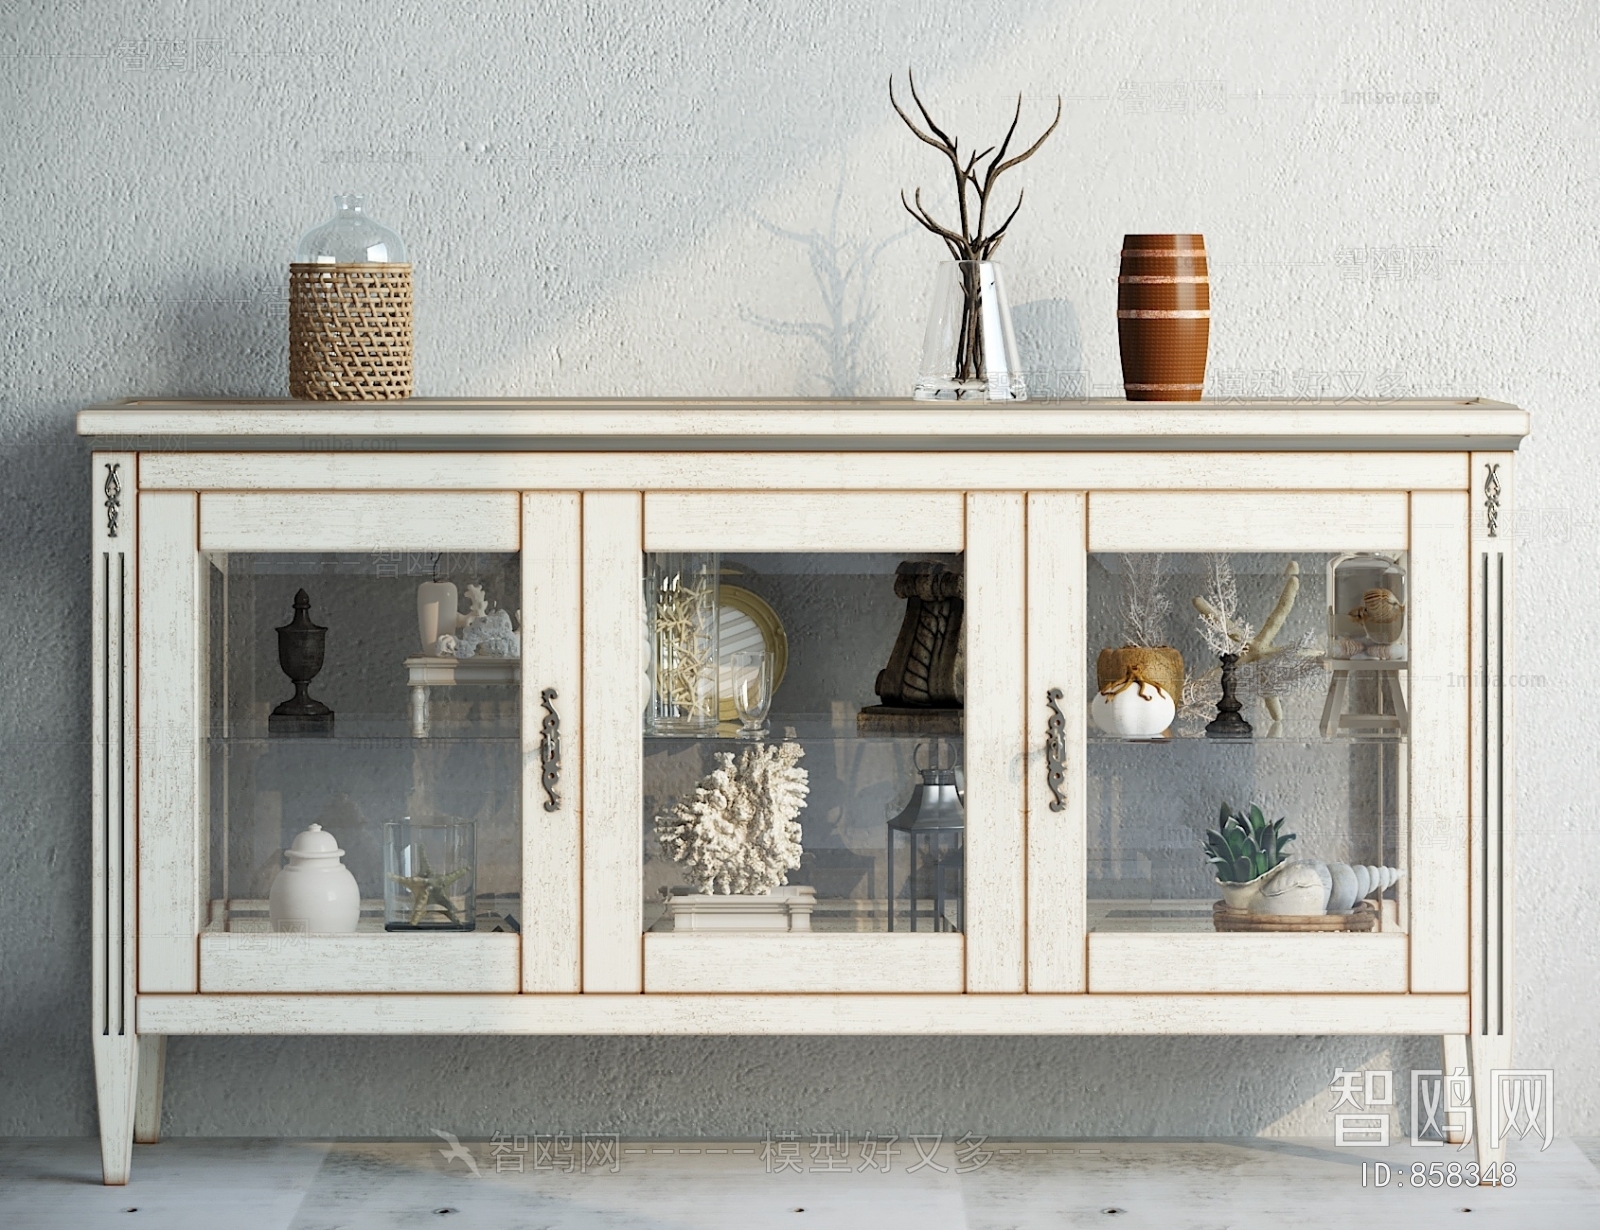 Idyllic Style Decorative Cabinet